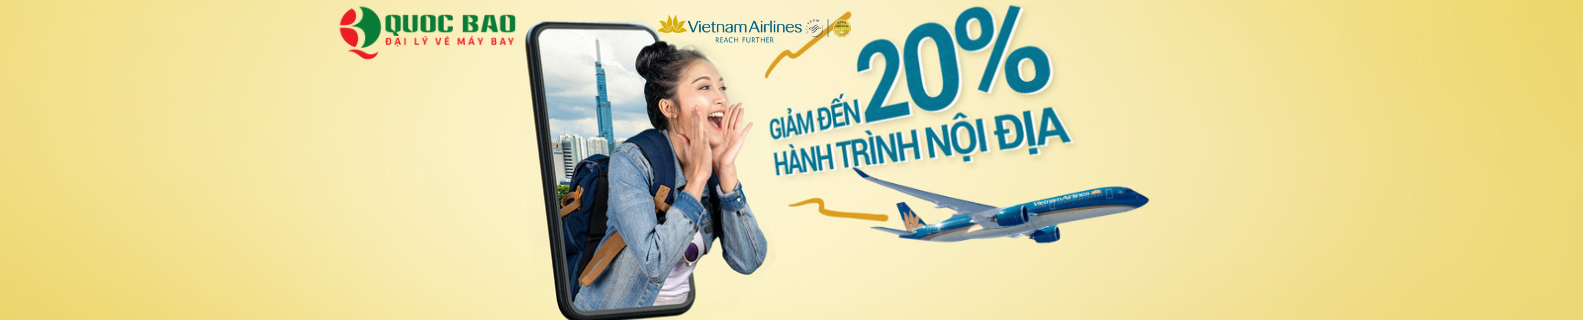 Vé máy bay Hà Nội đi Đà Nẵng